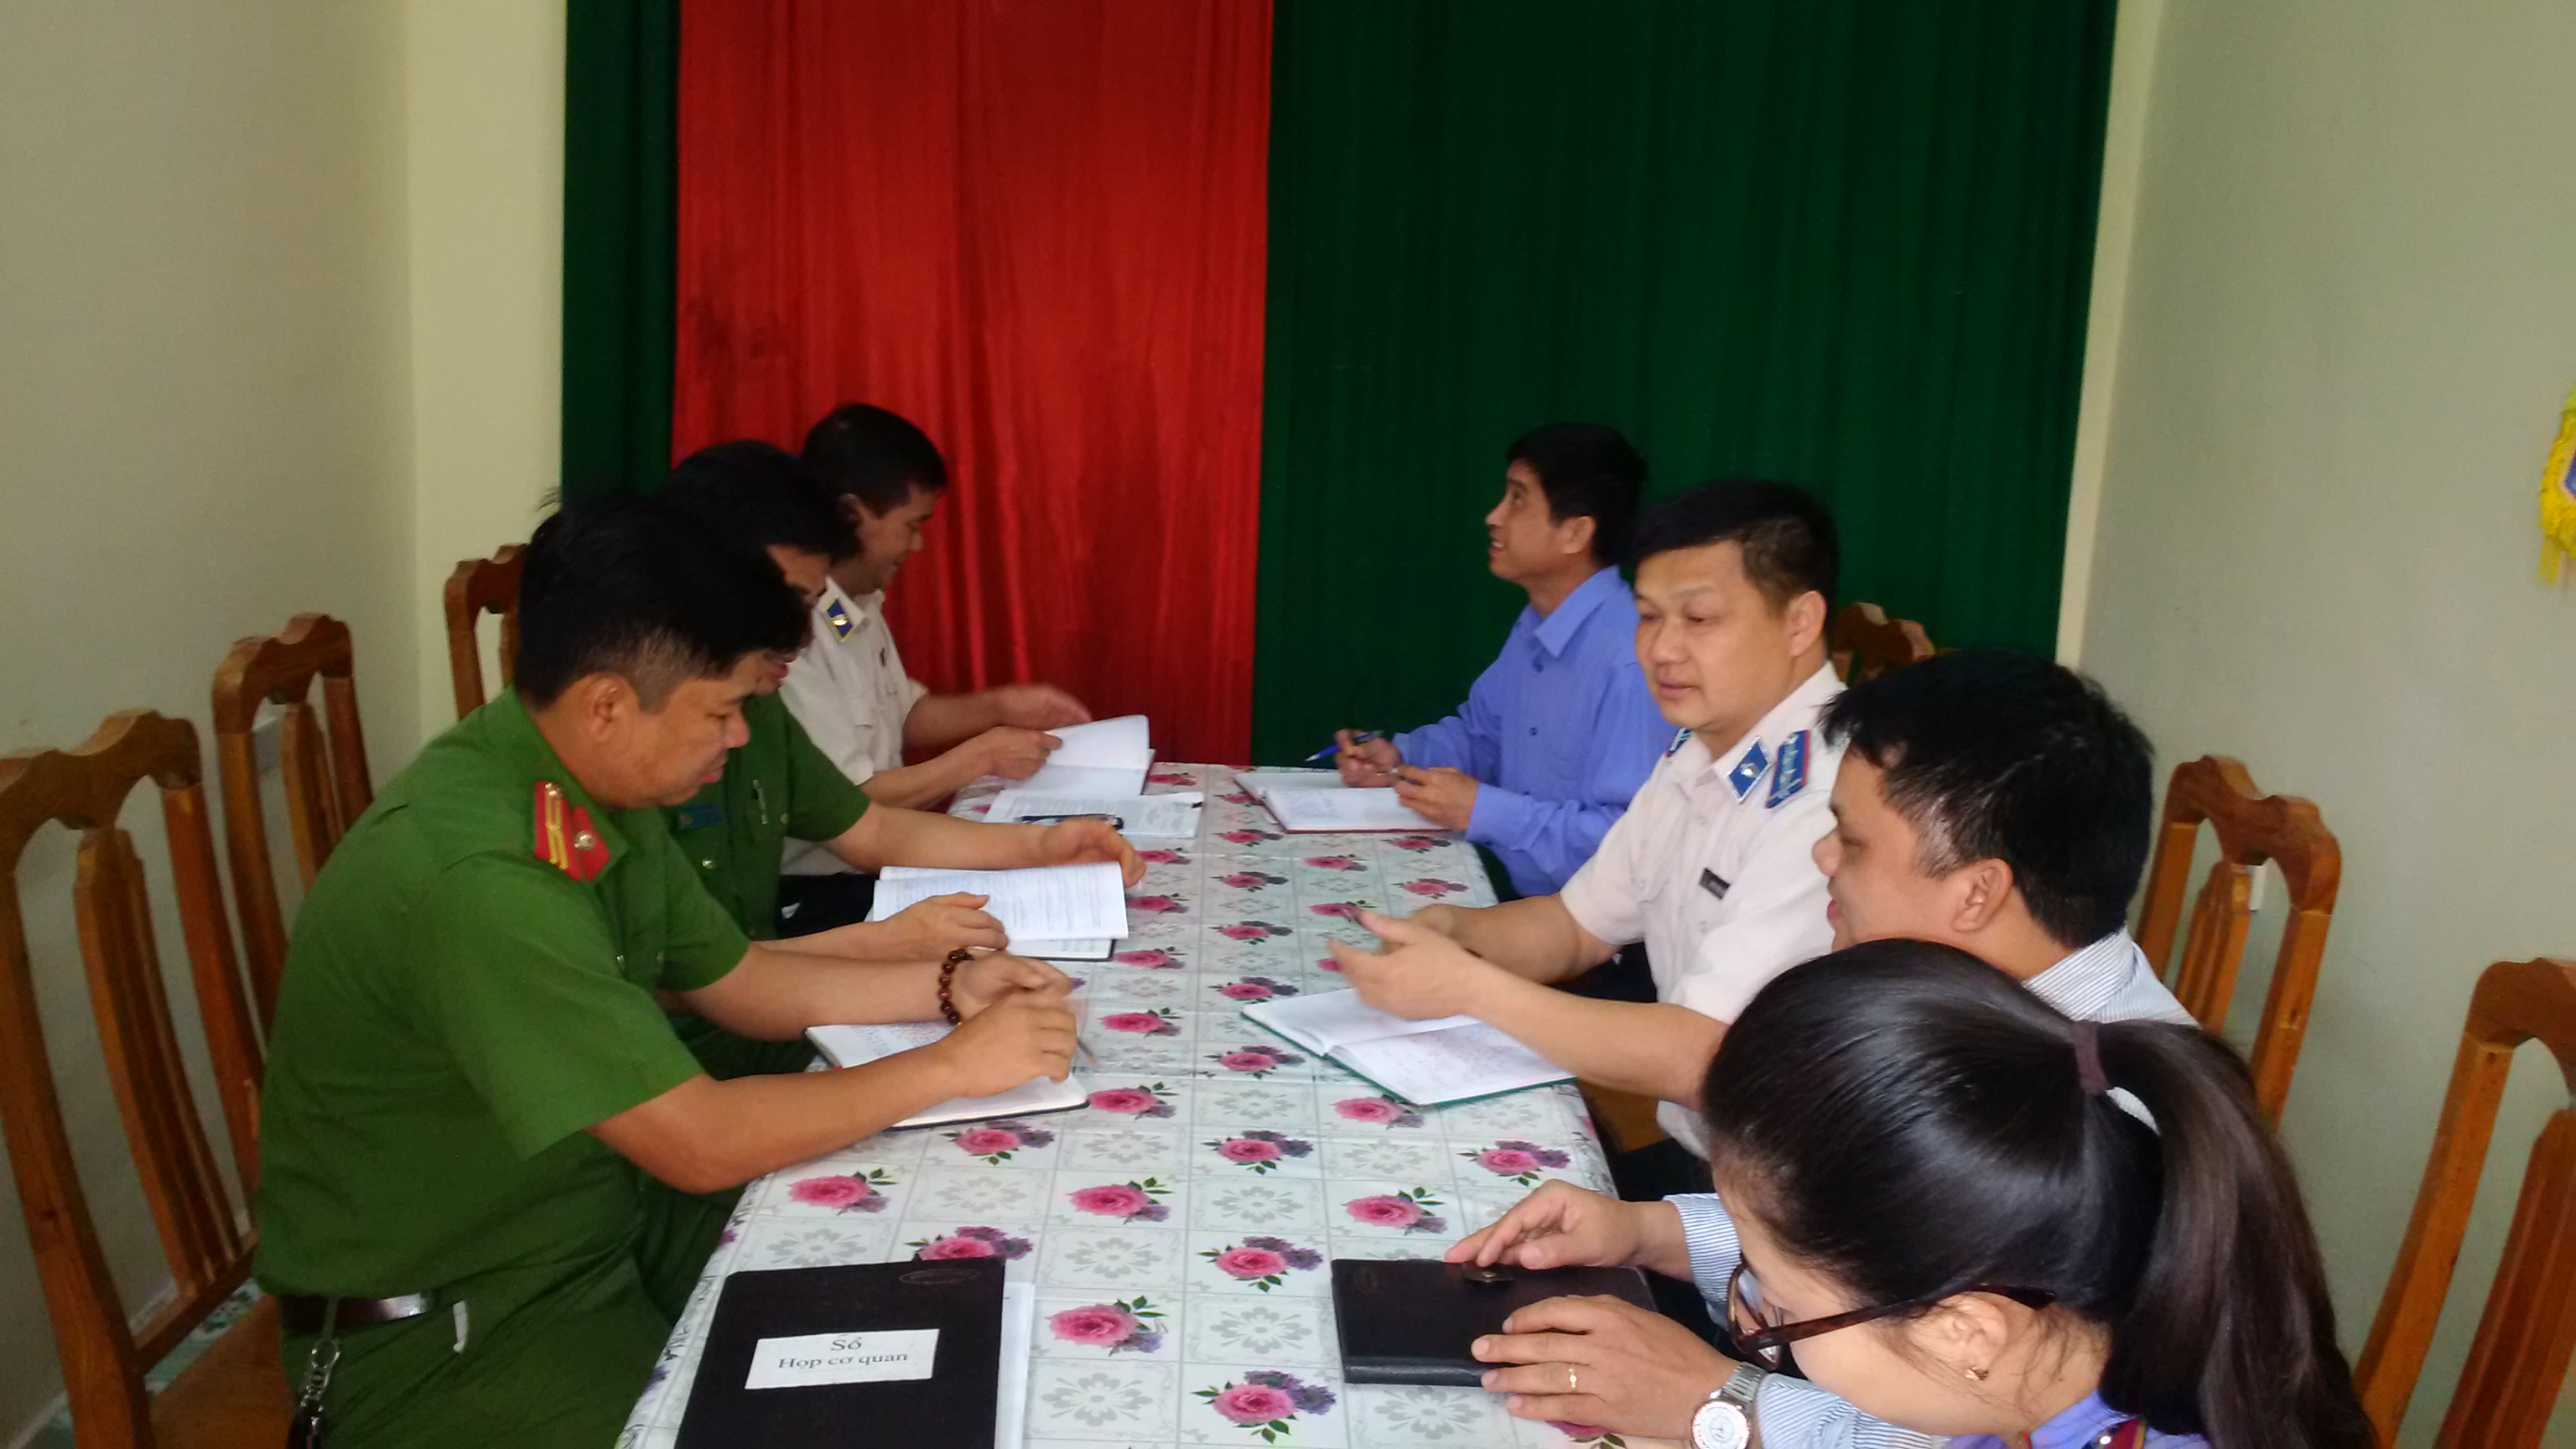 Chi cục Thi hành án dân sự huyện Trà Lĩnh tổ chức Hội nghị sơ kết Quy chế phối hợp liên ngành trong công tác thi hành án dân sự